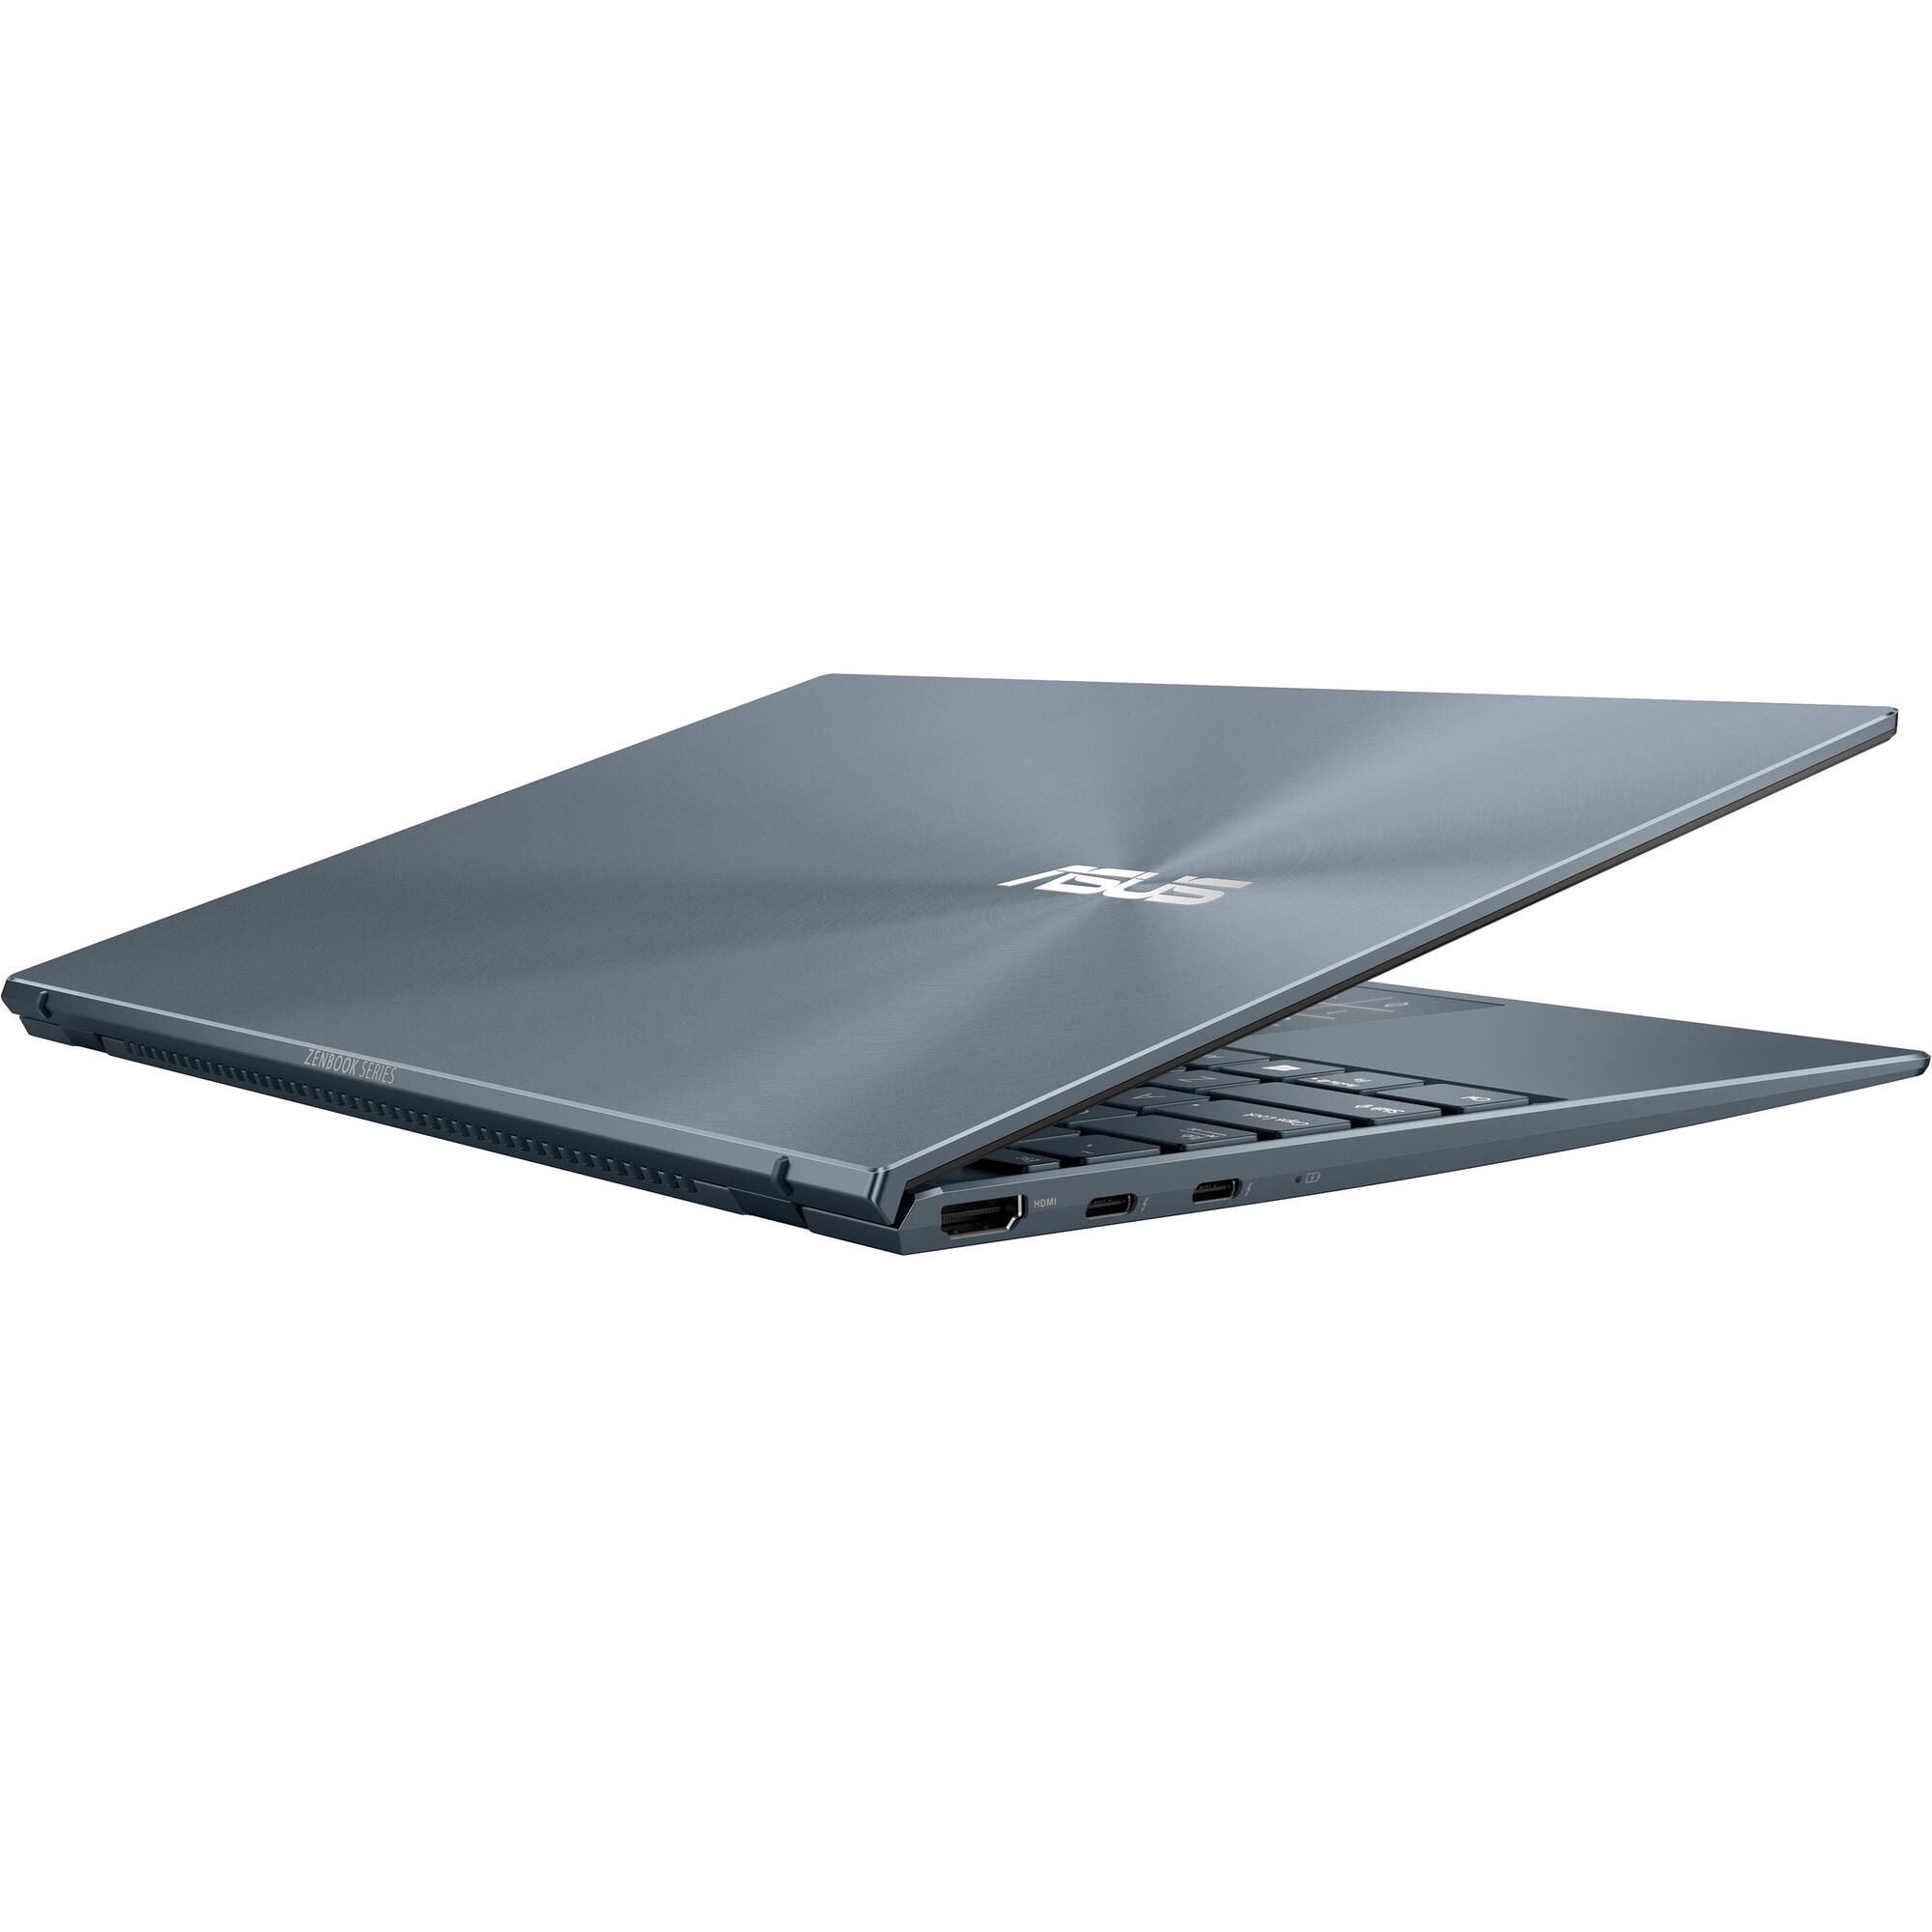 Laptop-Asus-UX425-Grey-13